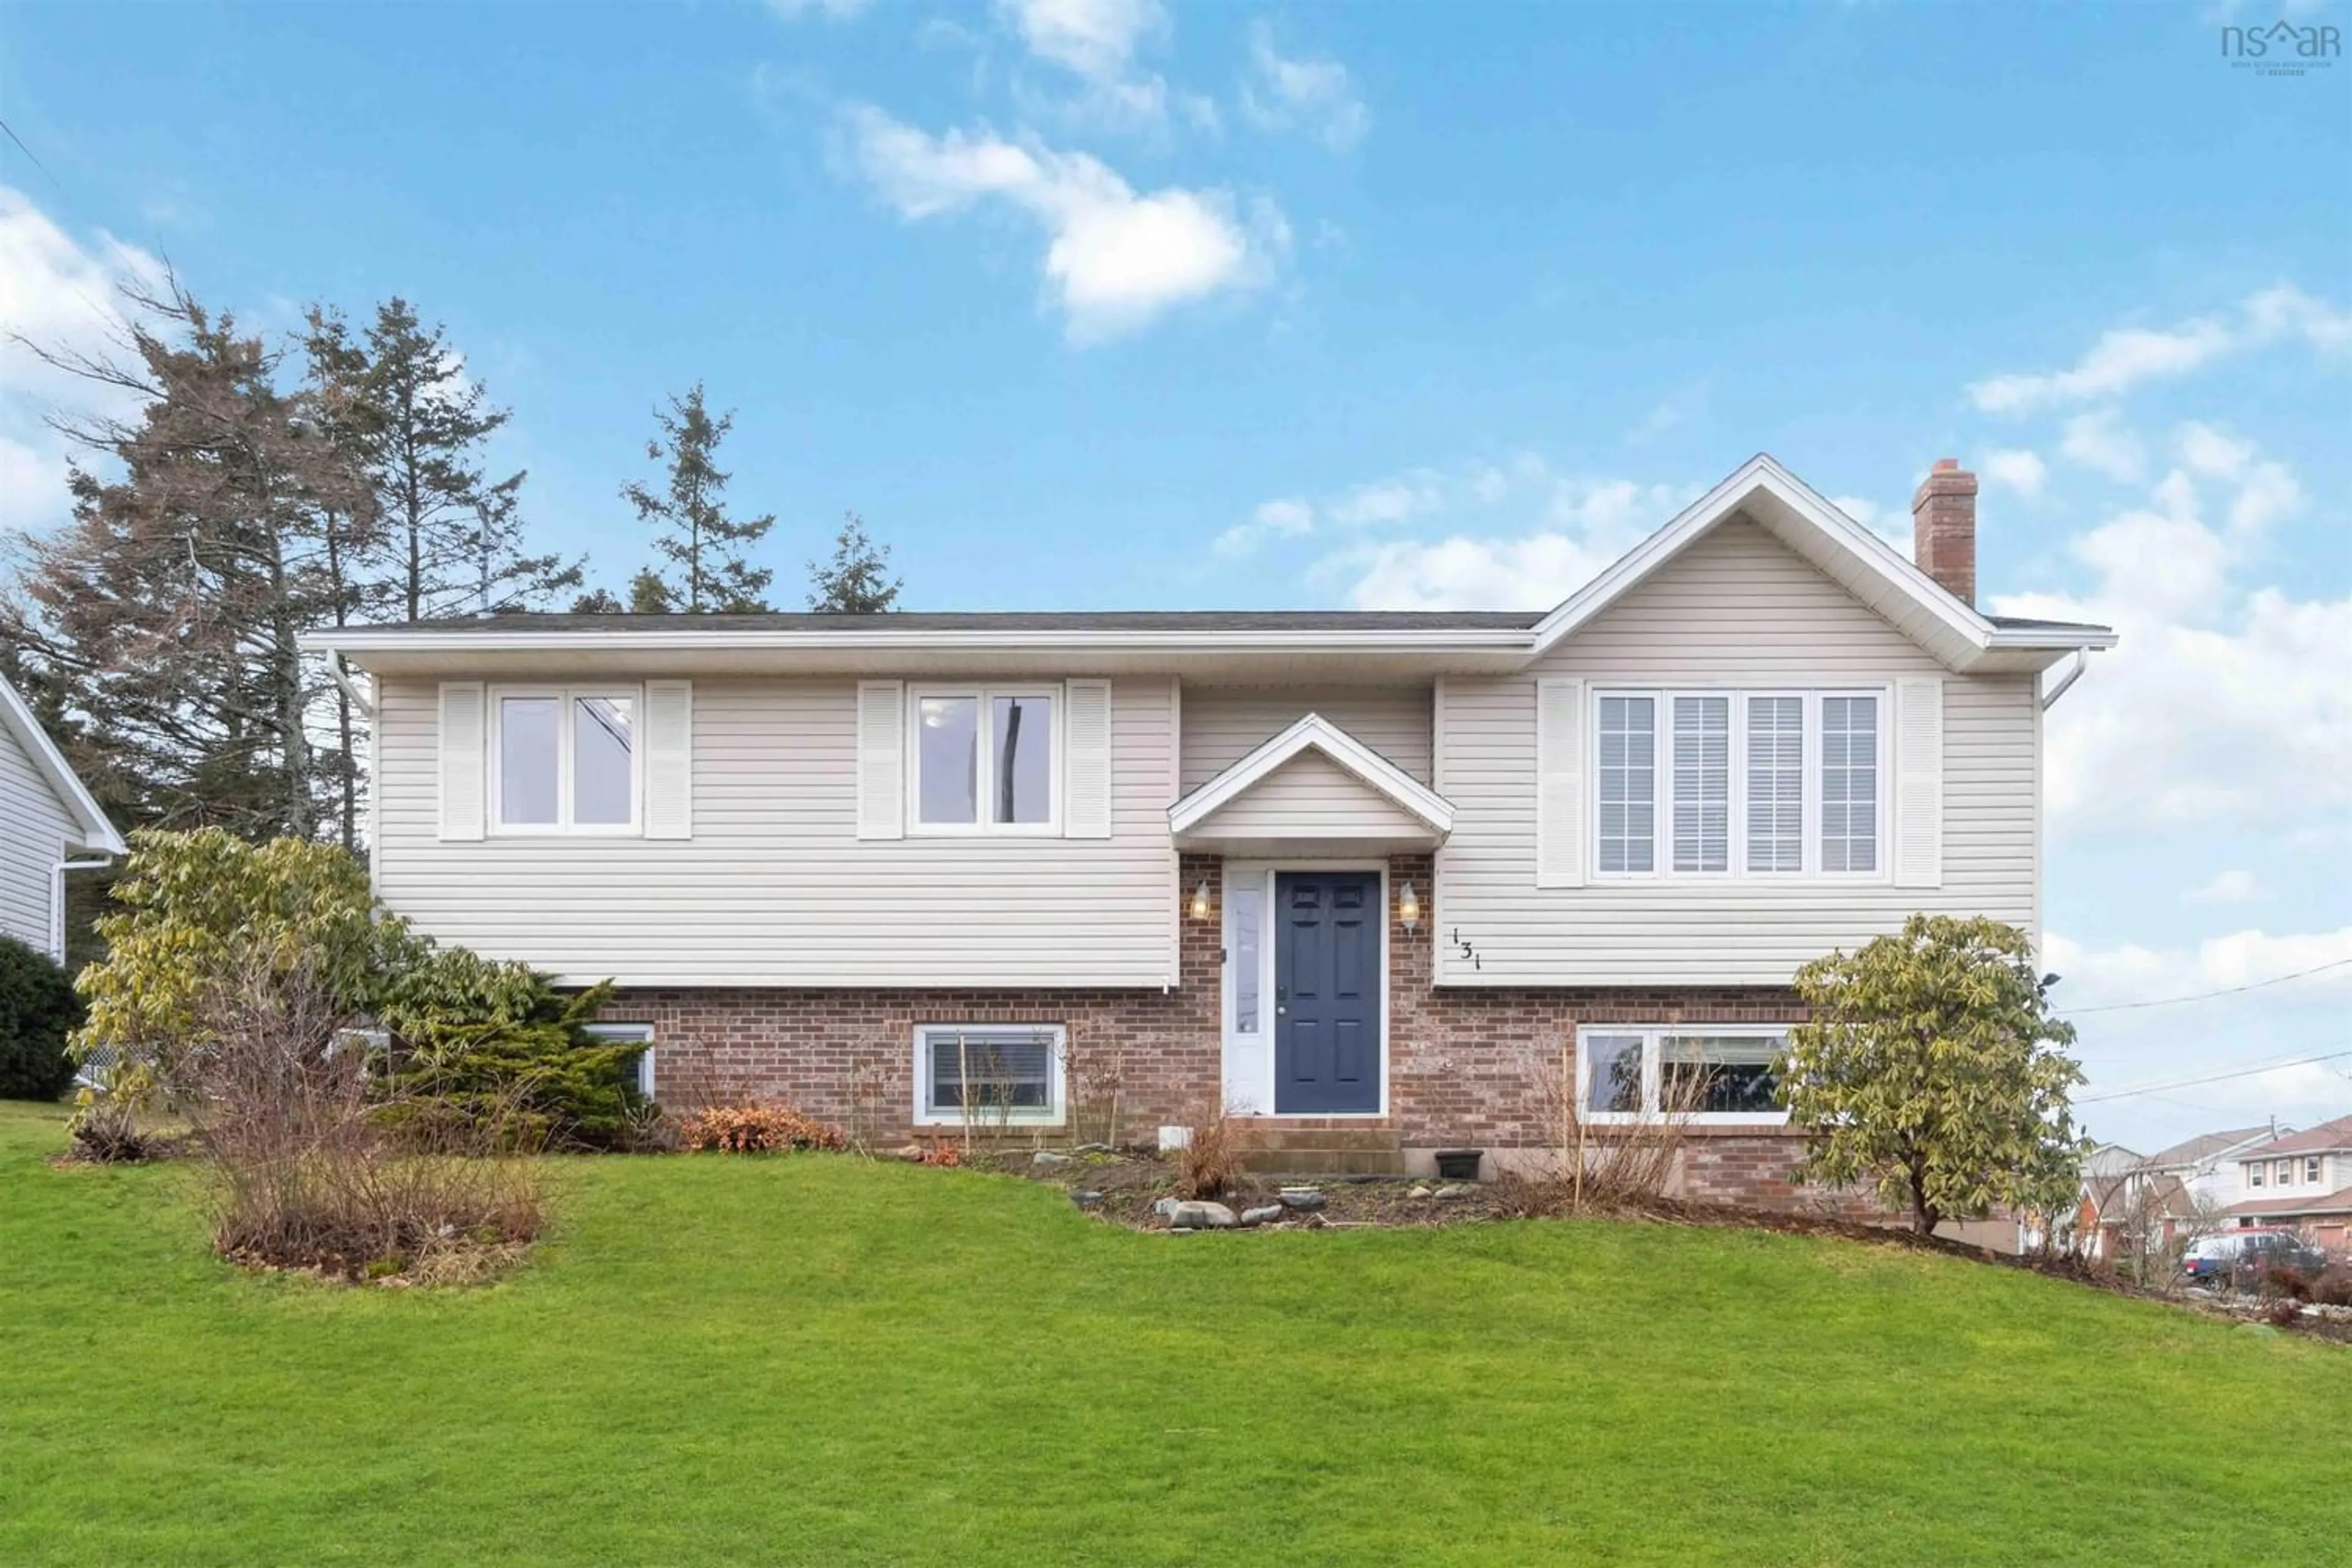 Home with stucco exterior material for 131 Pinewood Cres, Cole Harbour Nova Scotia B2V 2P9